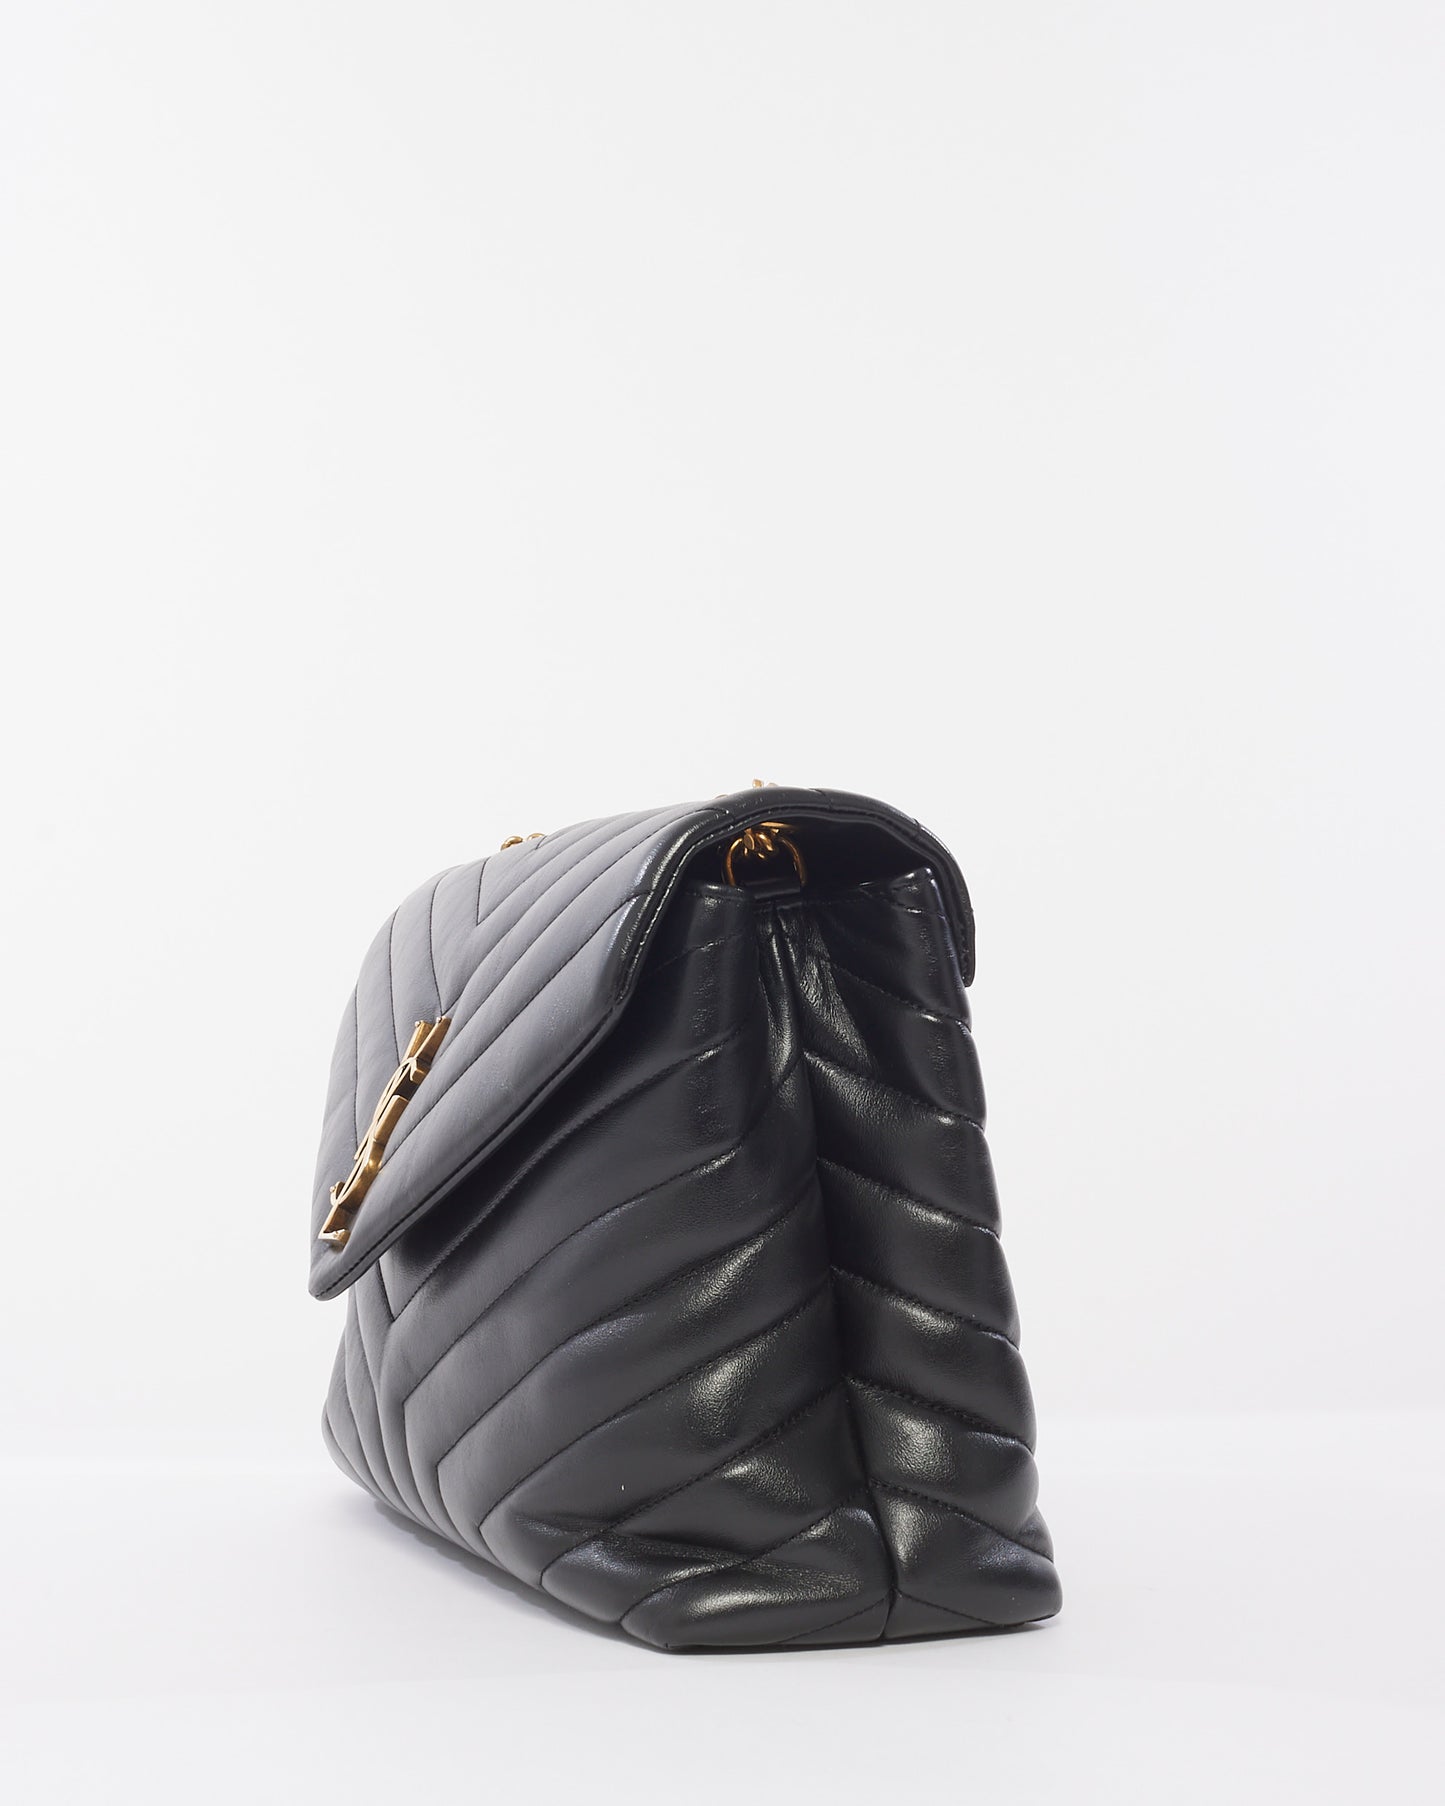 Saint Laurent Black Chevron Leather Medium GHW Loulou Bag